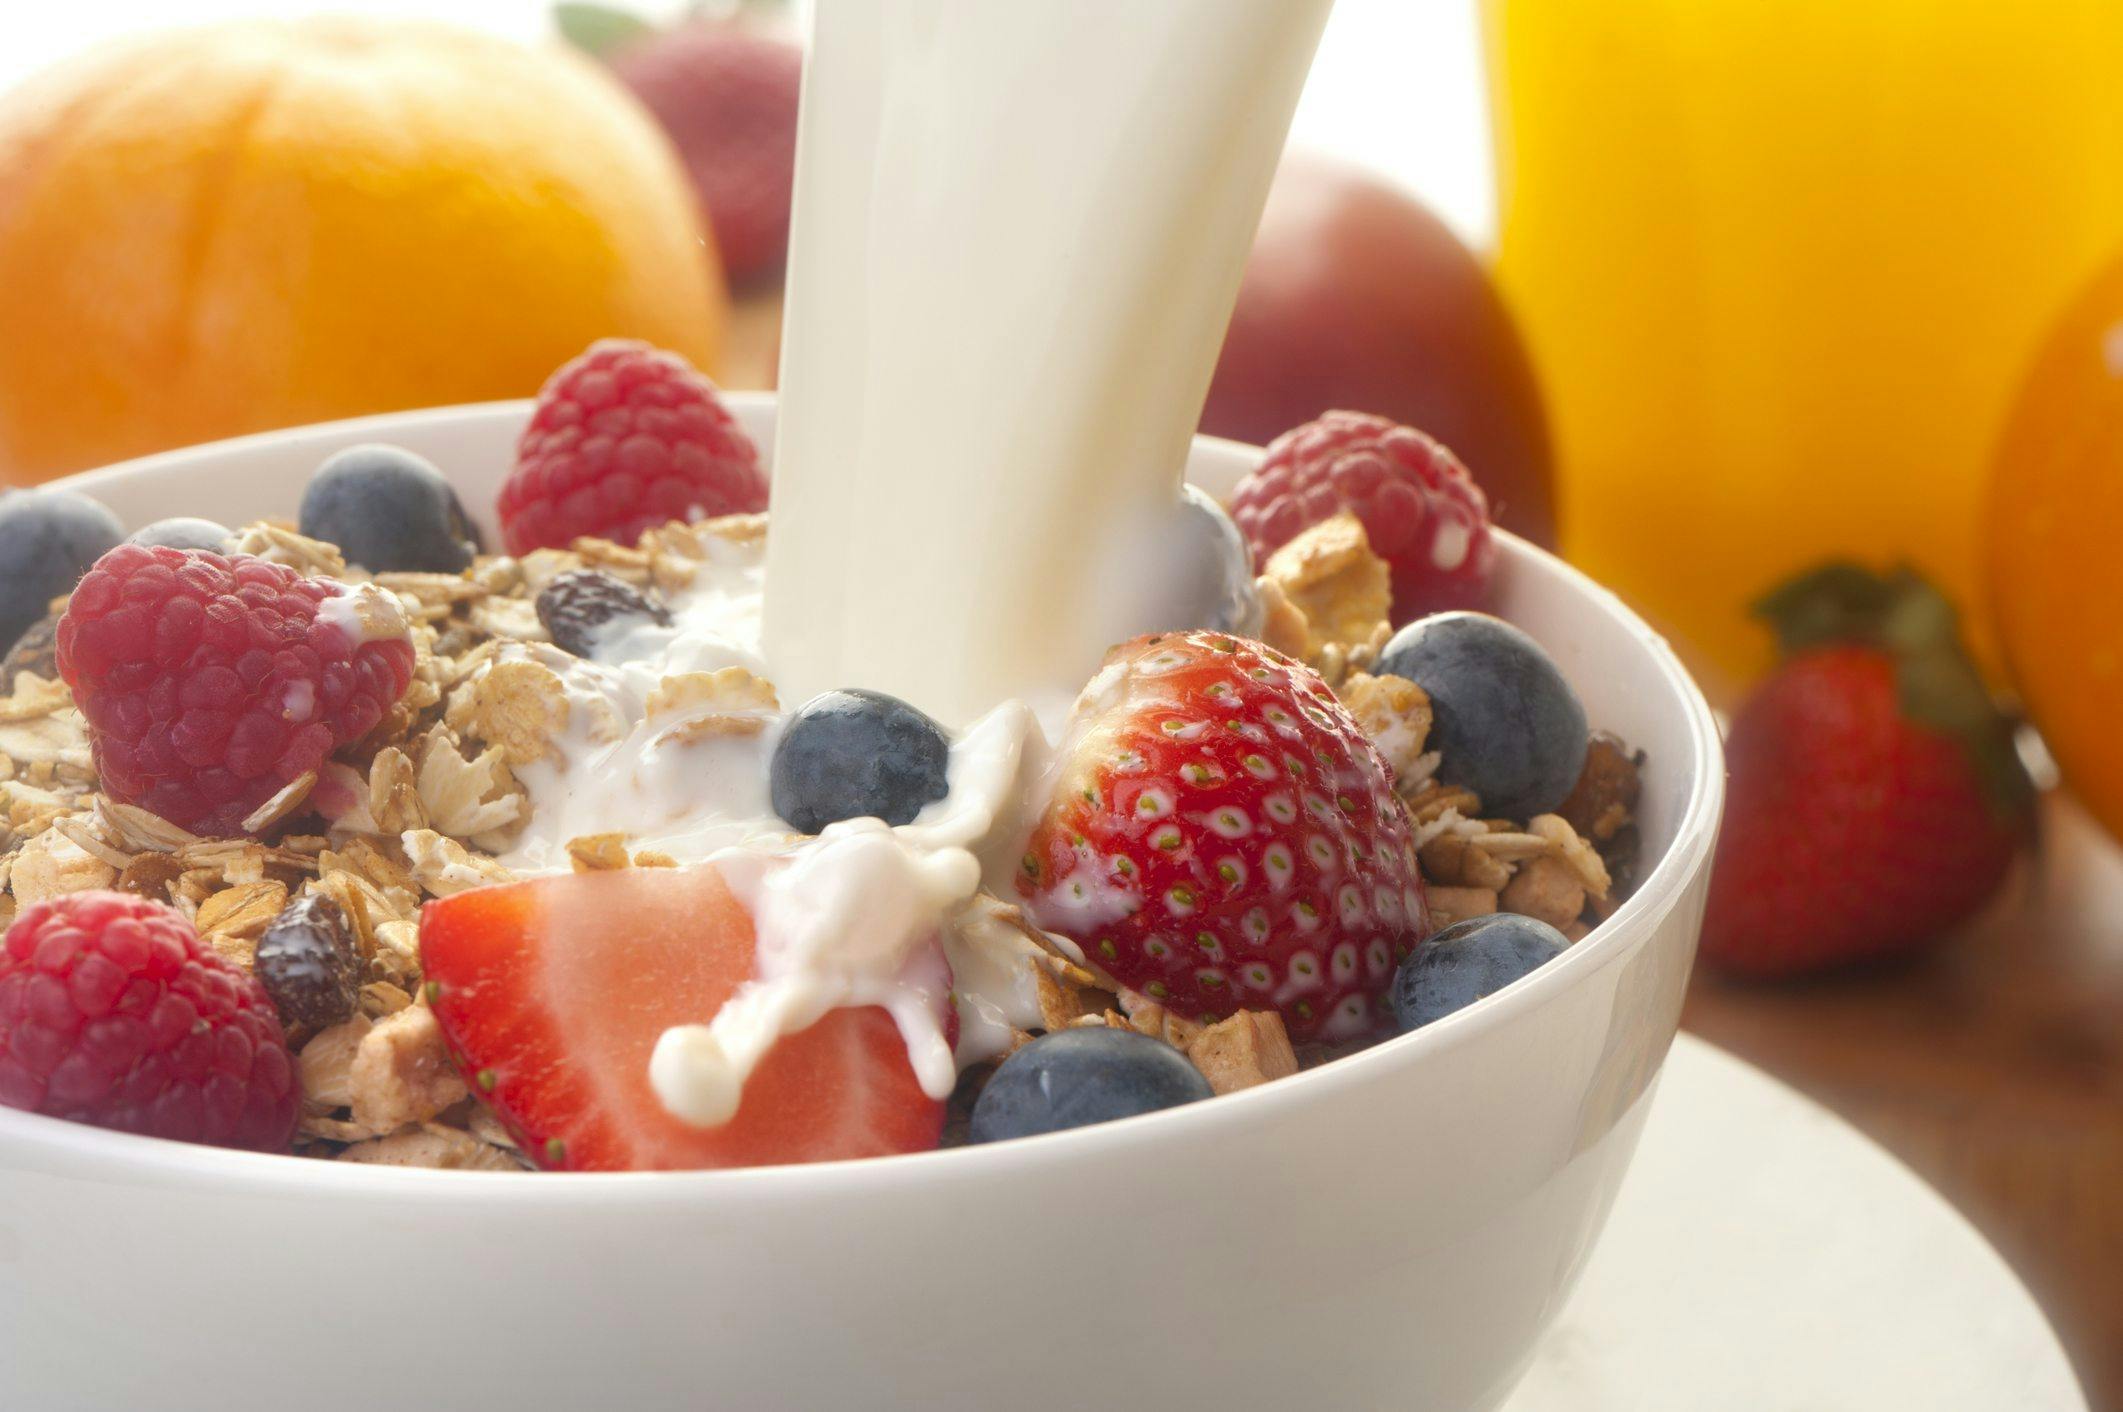 Typical DASH-diet foods: skim milk, grains and fruit